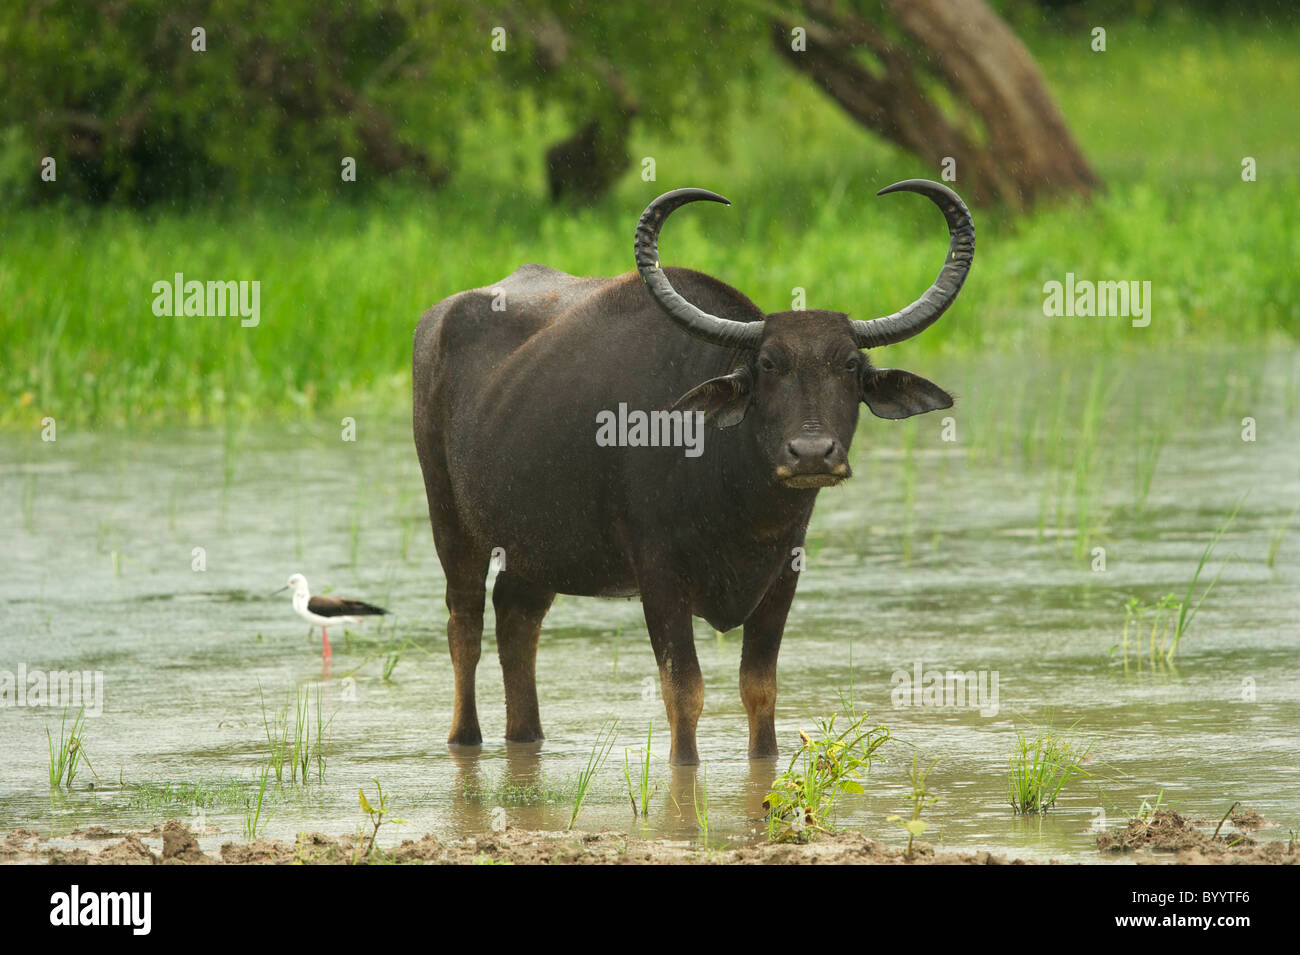 A wild buffalo in rain Yala National Park Sri Lanka Stock Photo